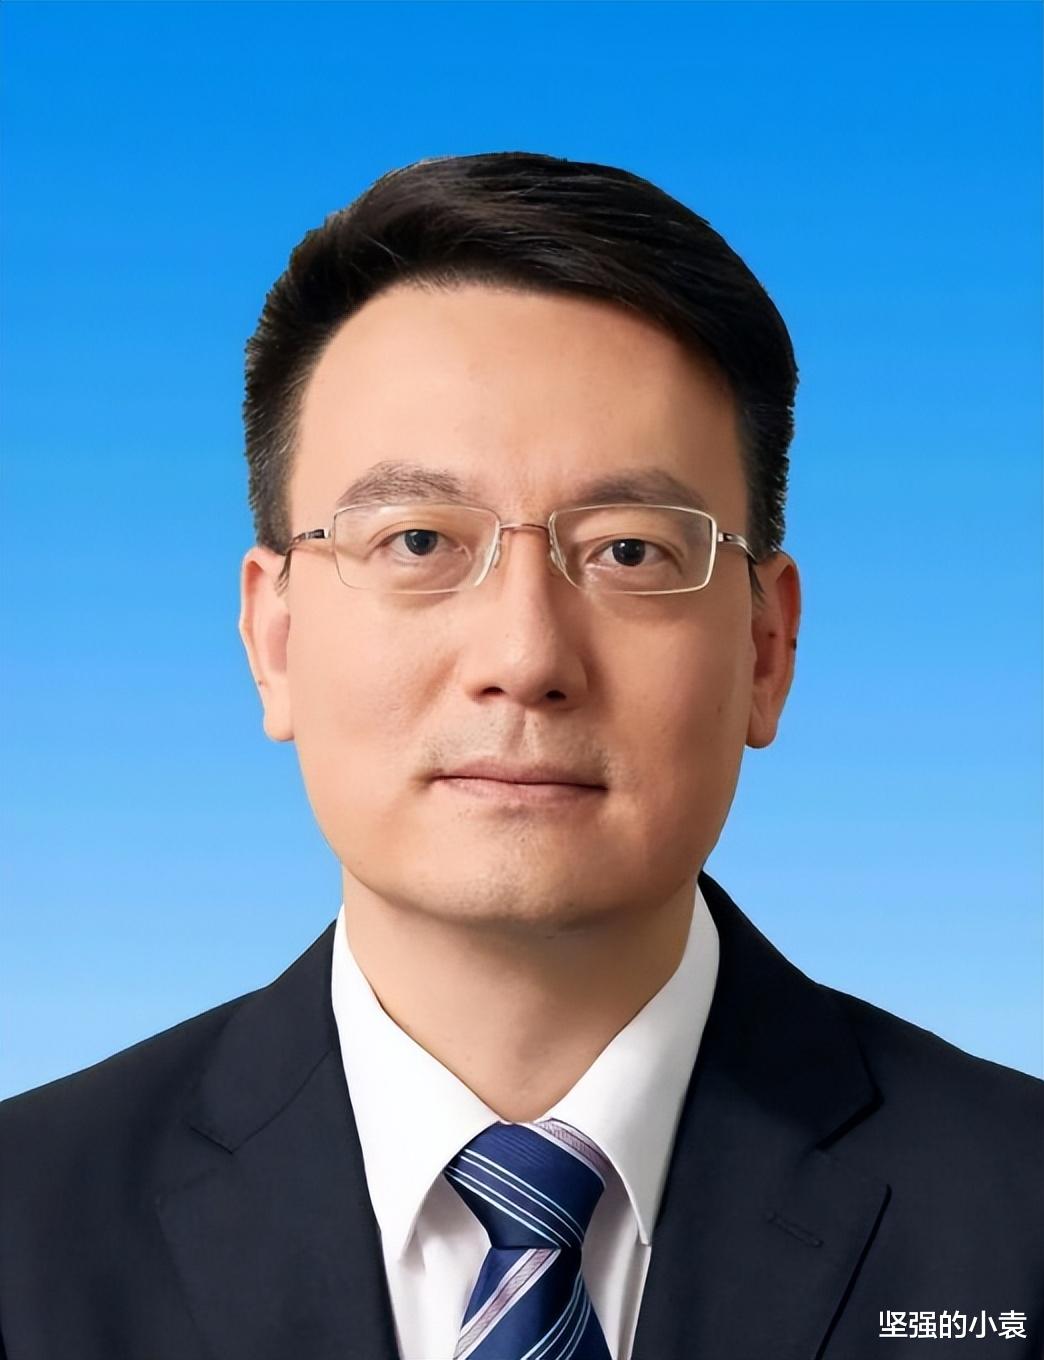 他是现任海南省副省长, 46岁成全国最年轻的副省长, 前途无量